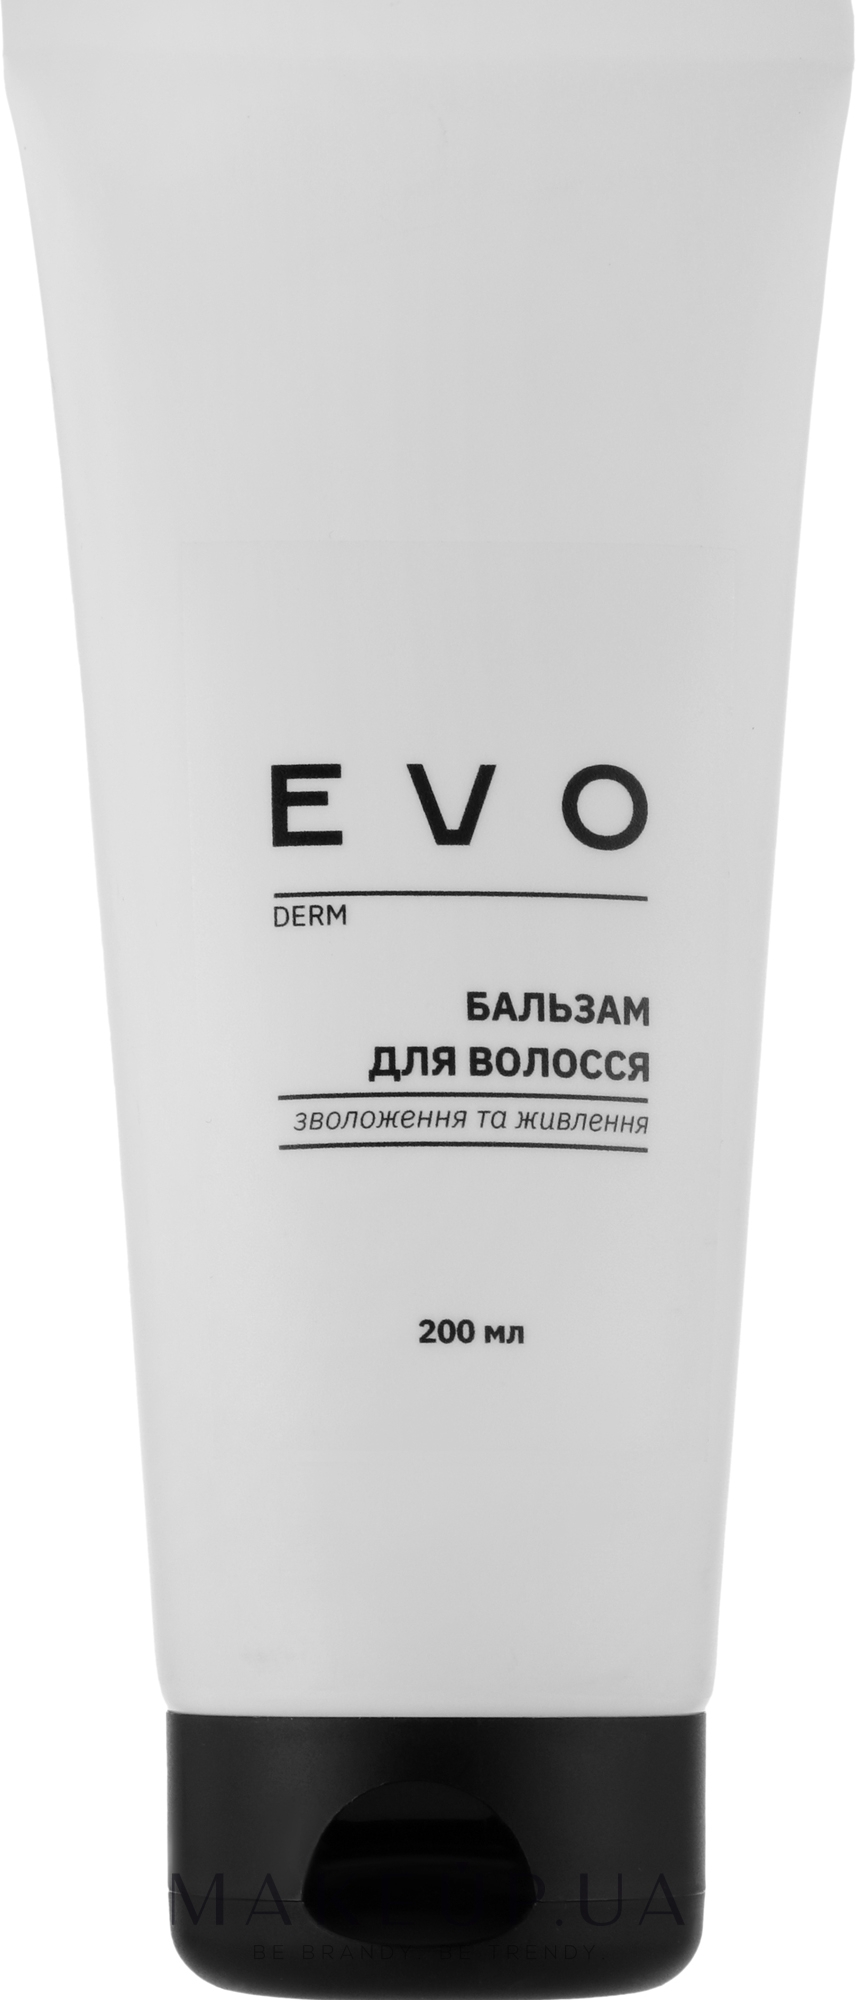 Бальзам для волосся "Зволоження й живлення" - EVO derm — фото 200ml